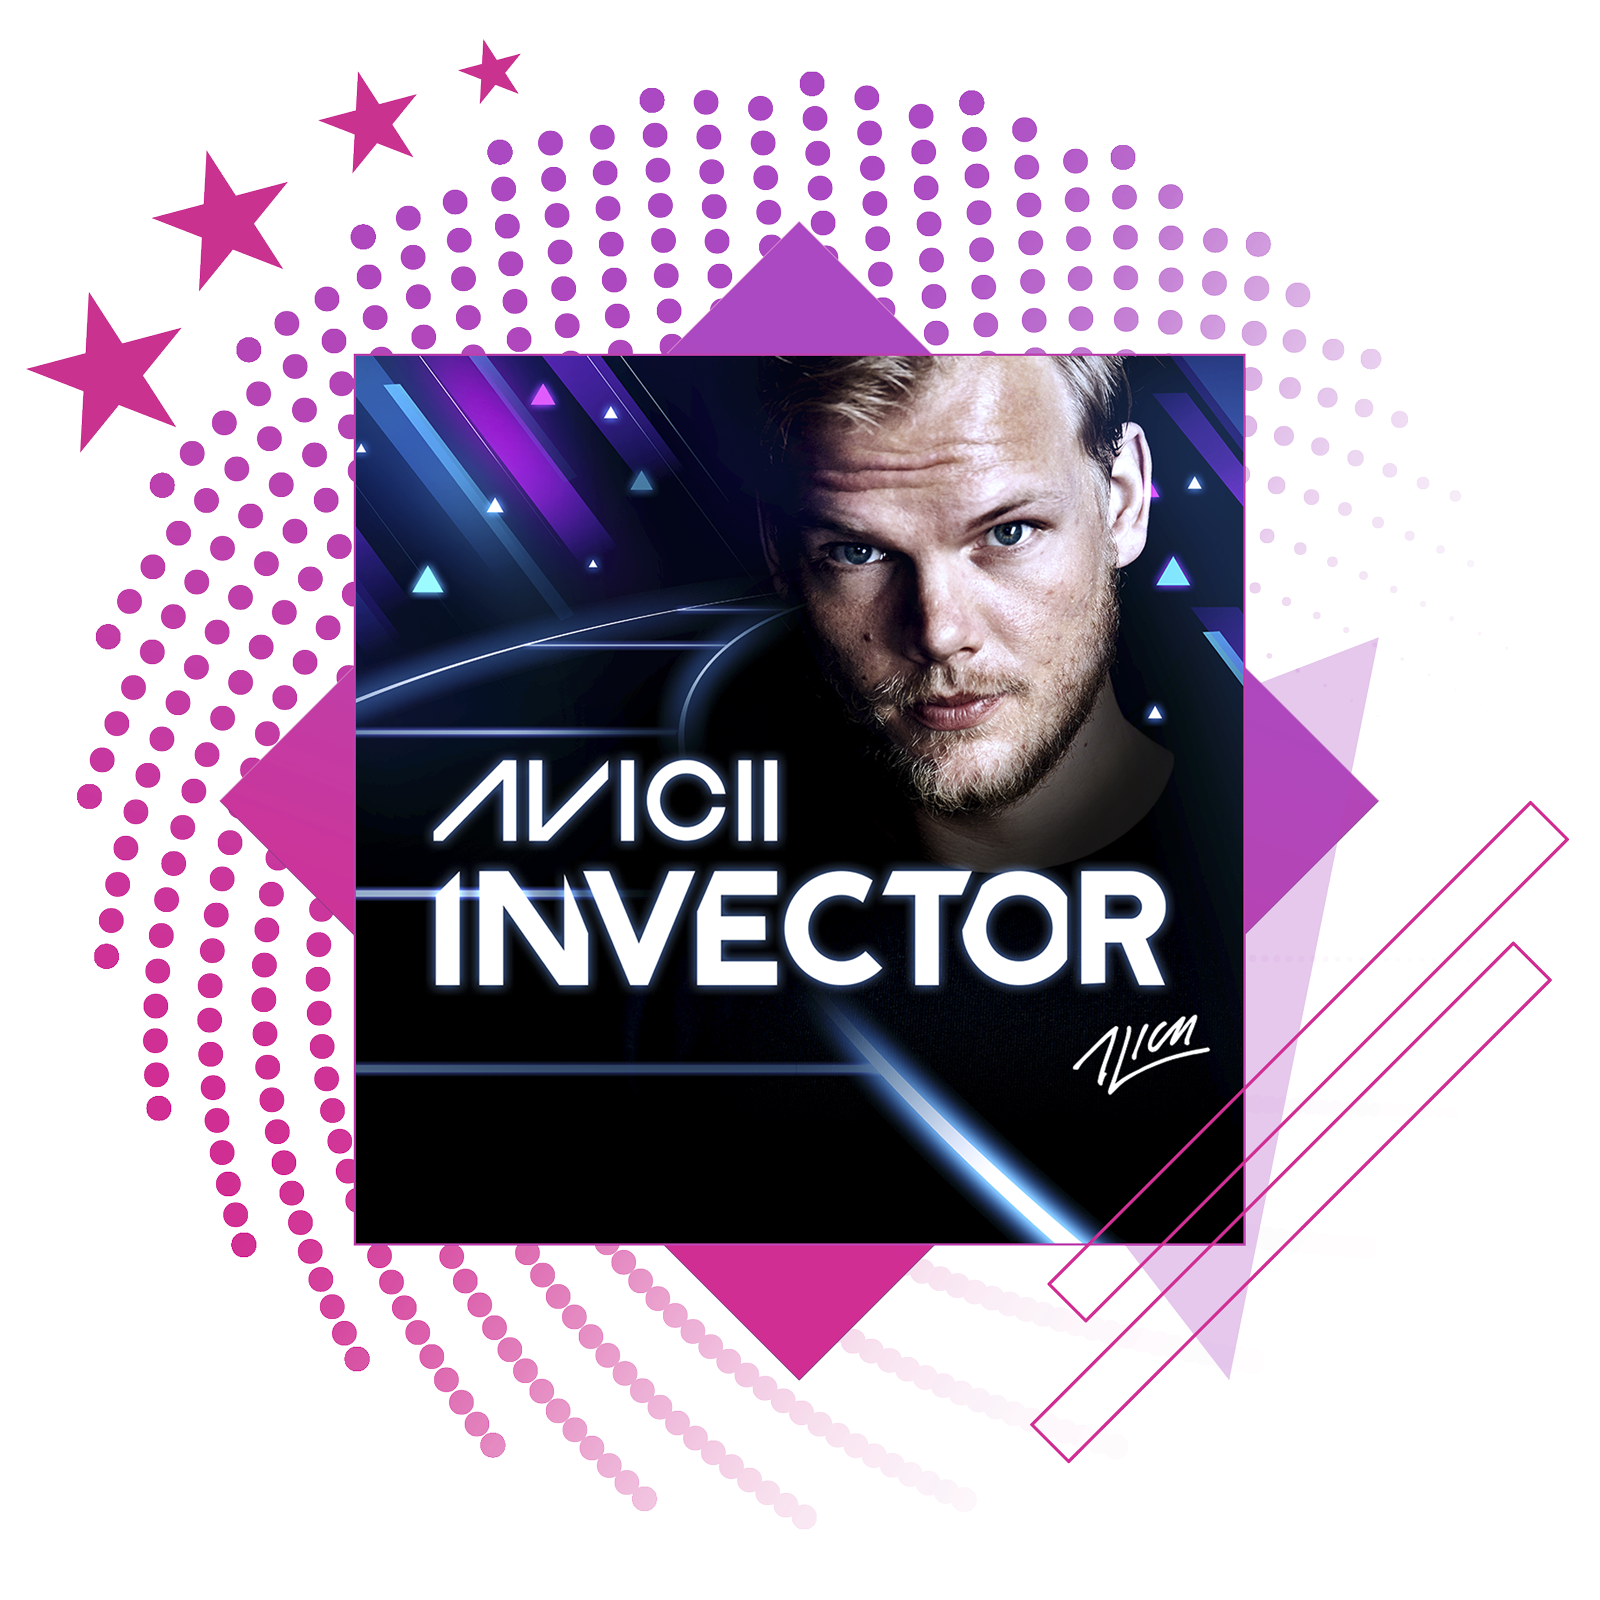 Лучшие ритмичные игры – изображение с обложкой Aviici: Invector.